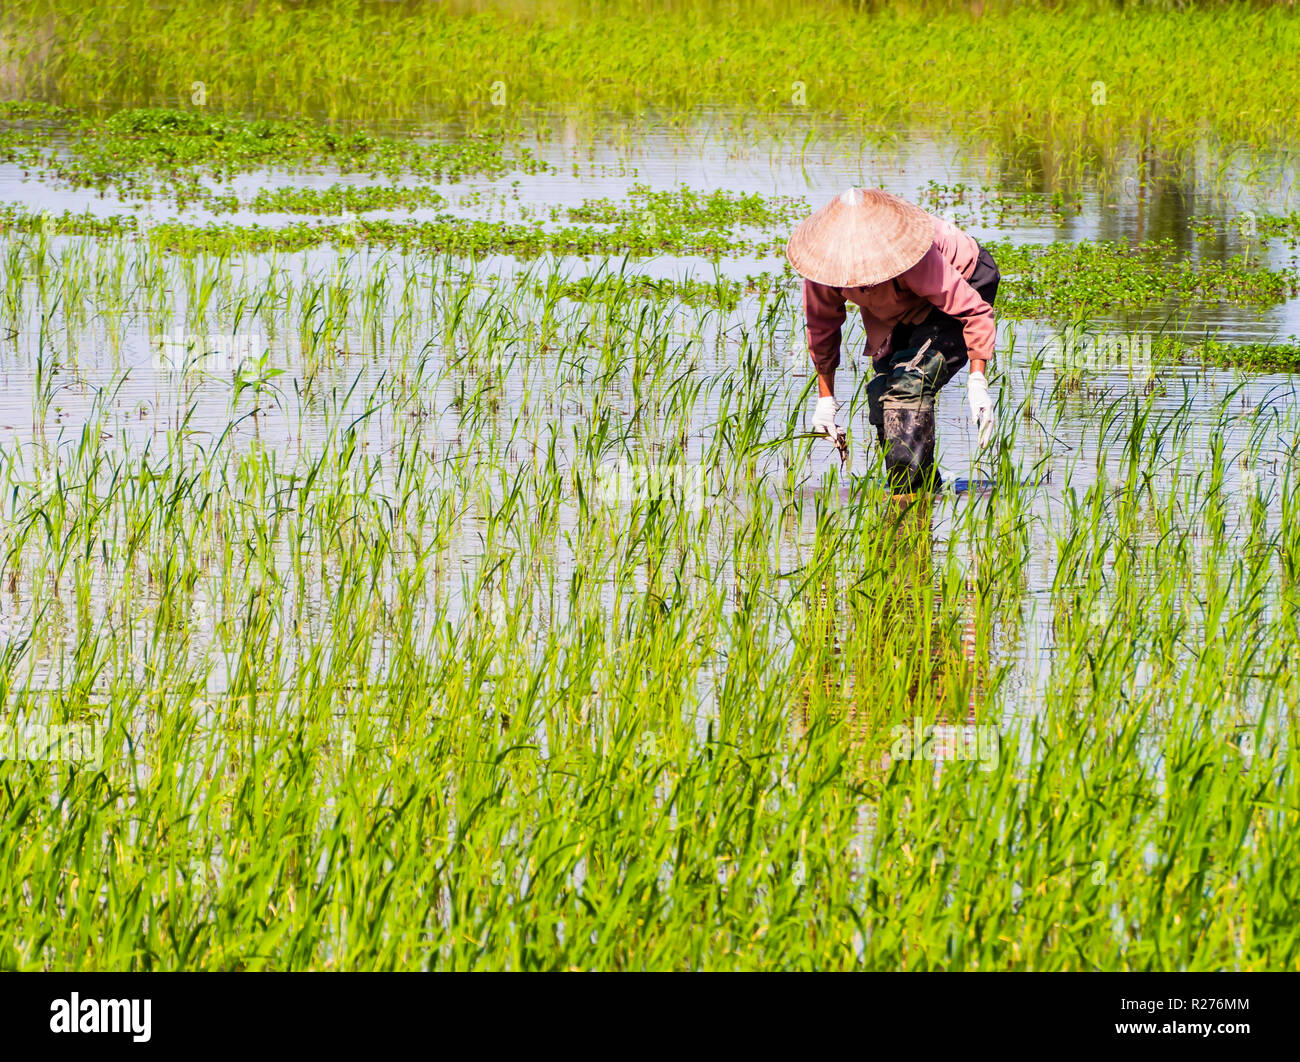 Agricultores vietnamitas trabajan en campos de arroz durante la estación de lluvias Foto de stock